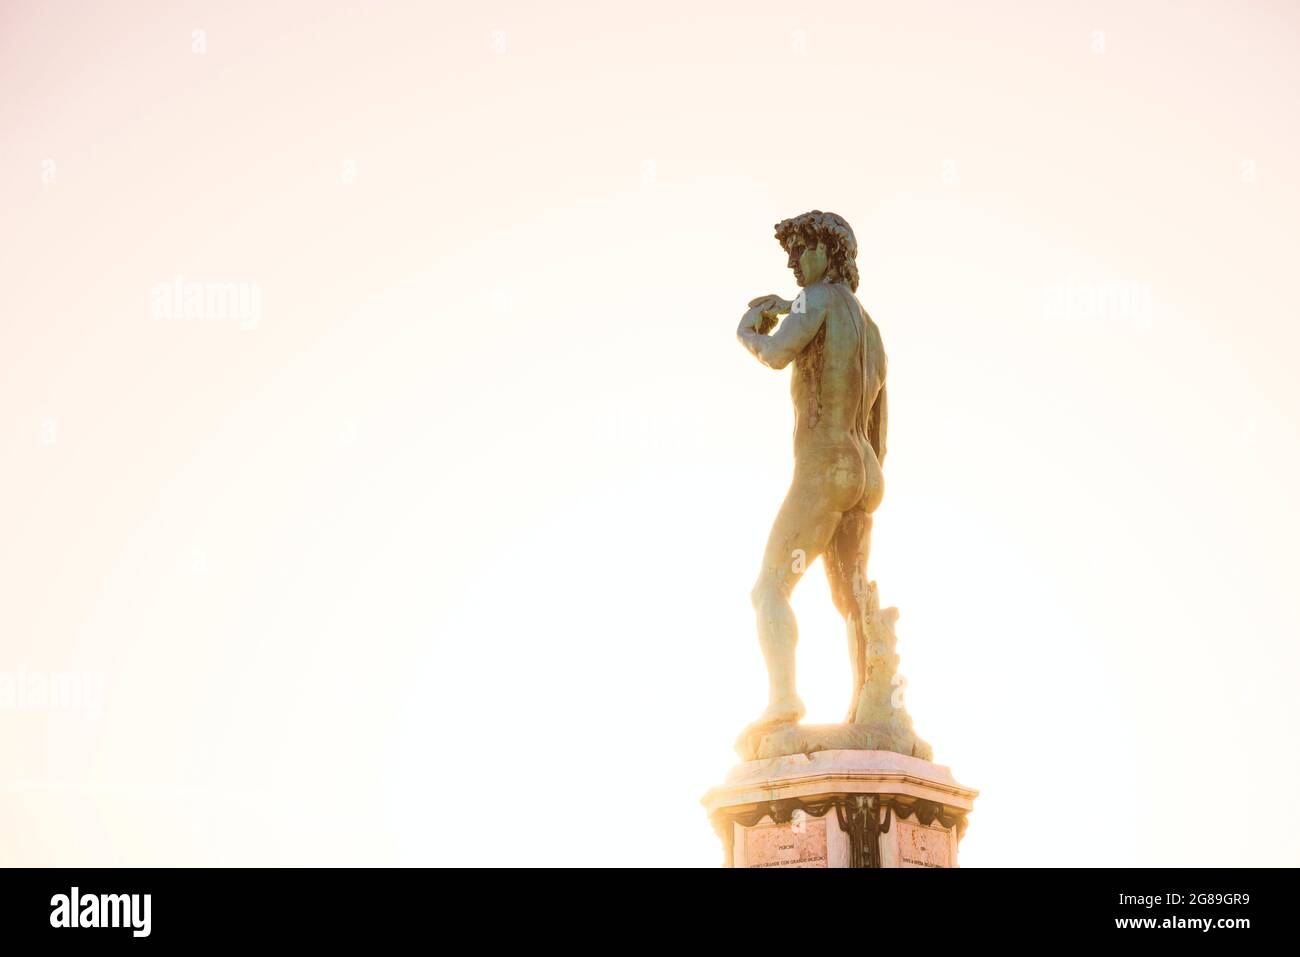 Piazzale Michelangelo, Statua del David di Michelangelo. Firenze Italia. Iluminati con raggi solari dorati Foto Stock